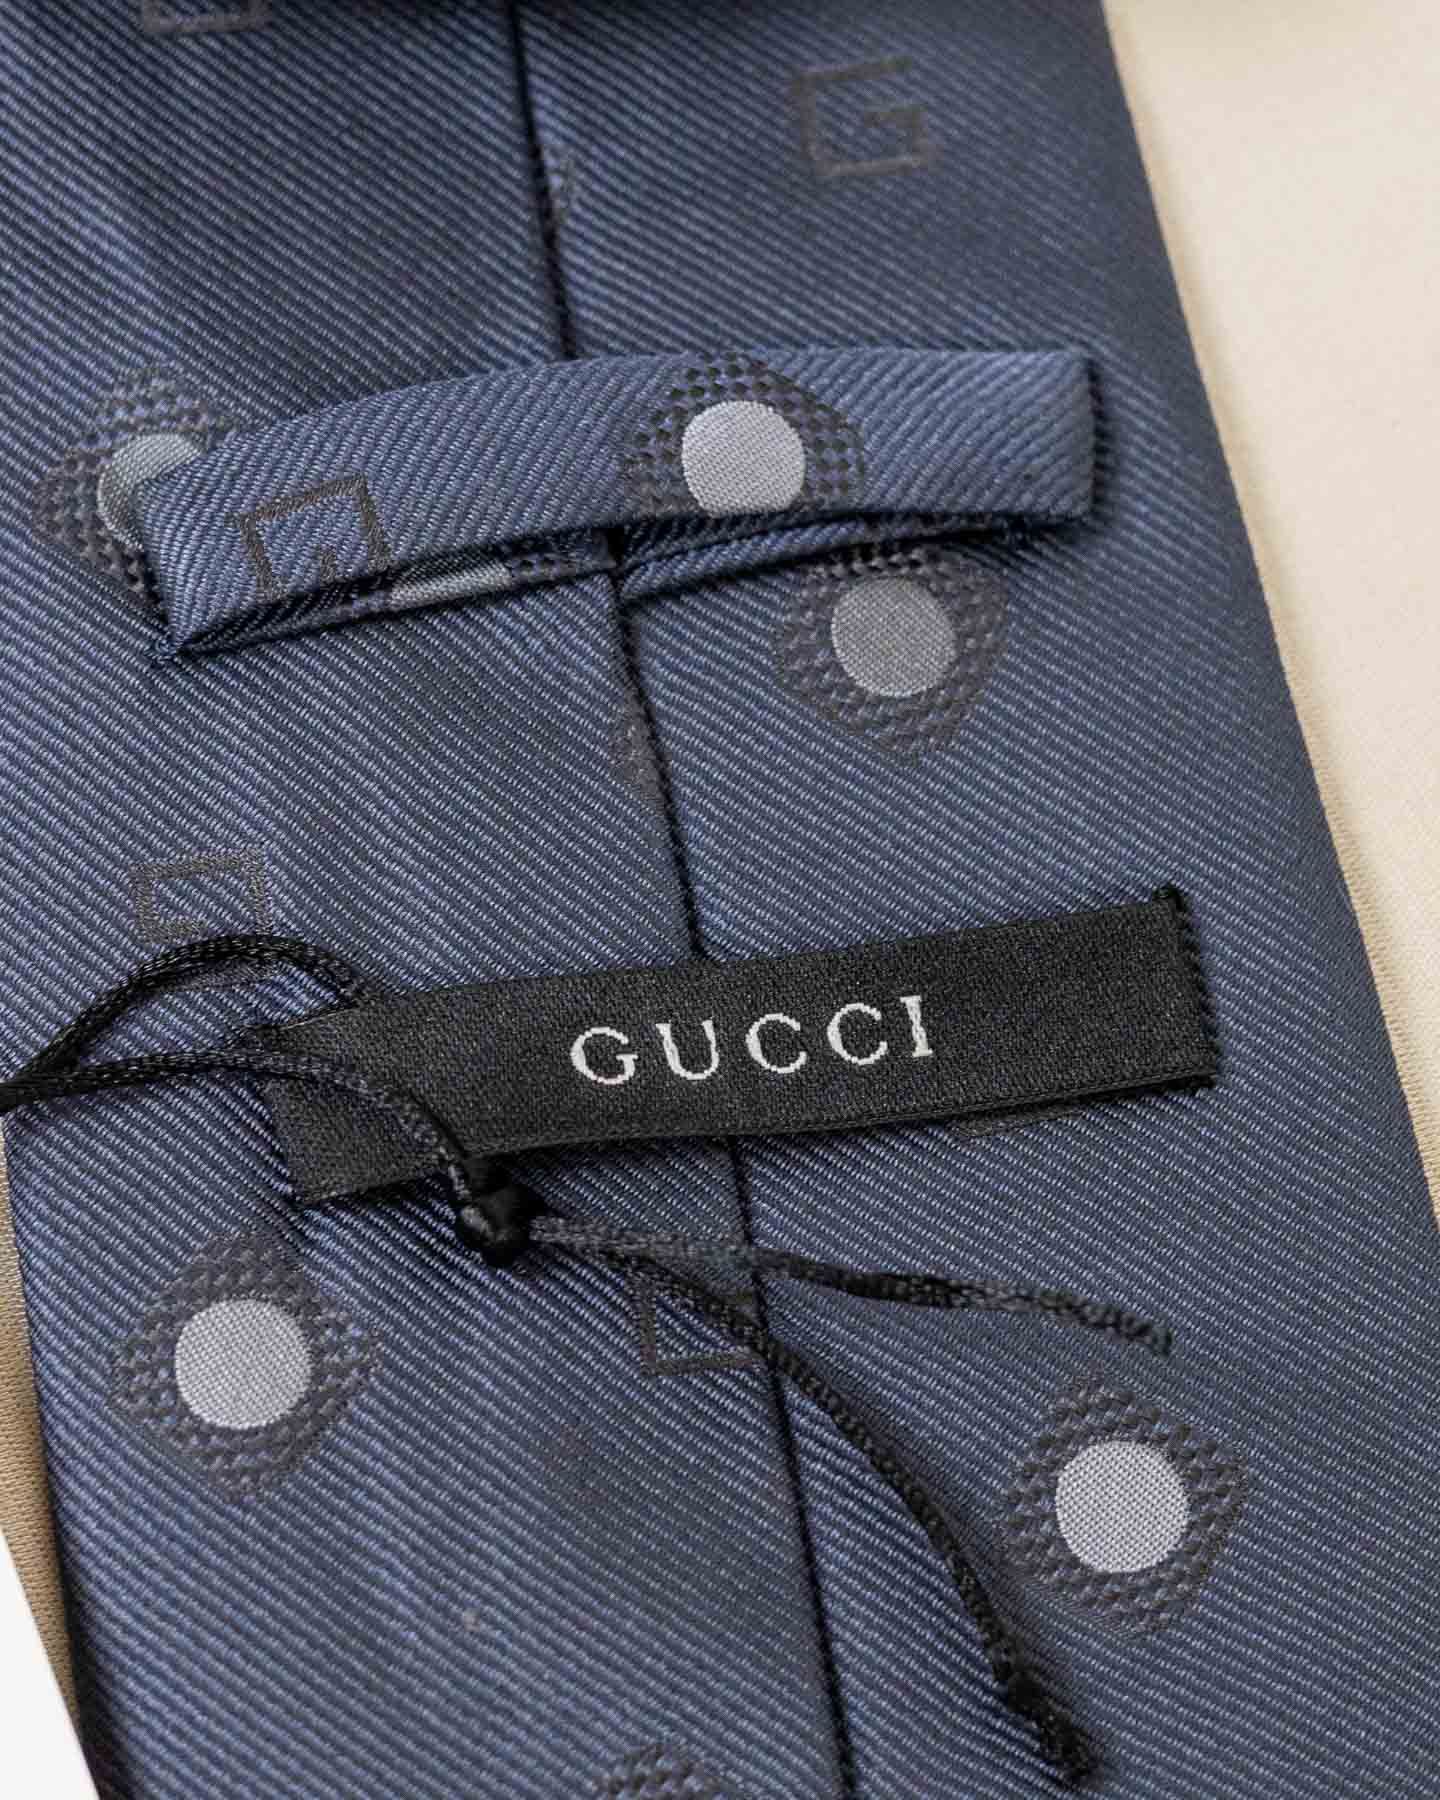 Cravate Gucci grise à pois 